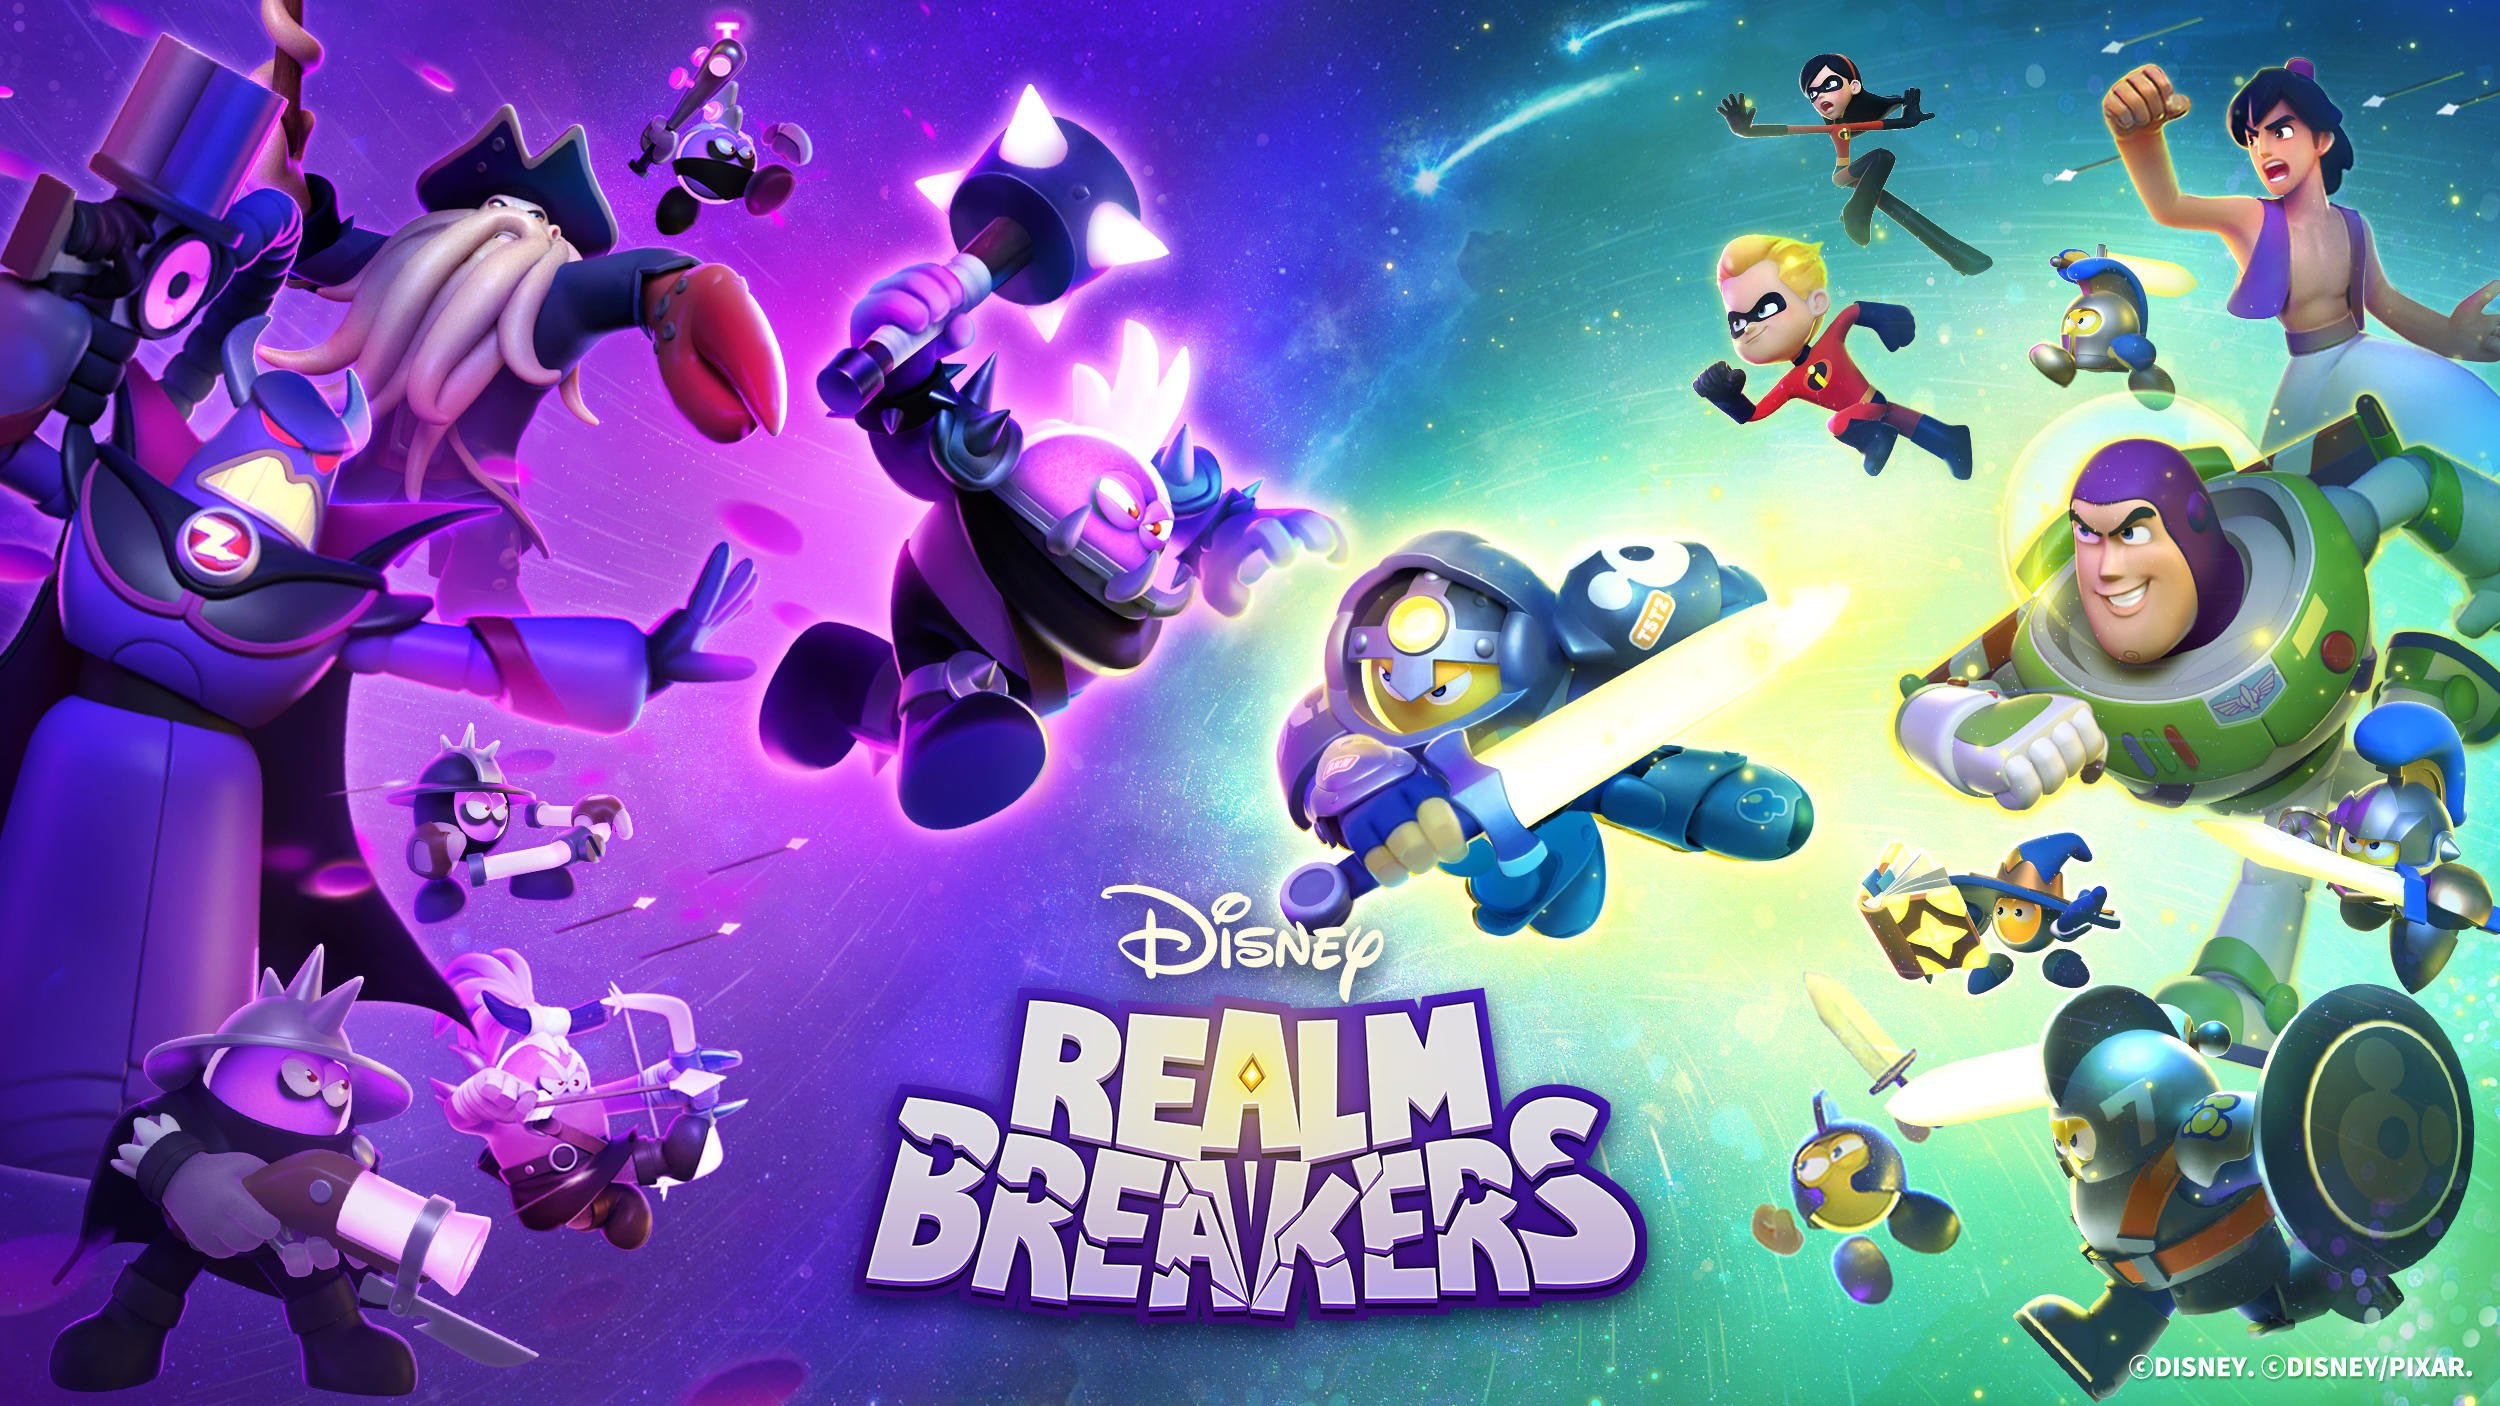 Screenshot 1 of Disney Realm Breakers 10115